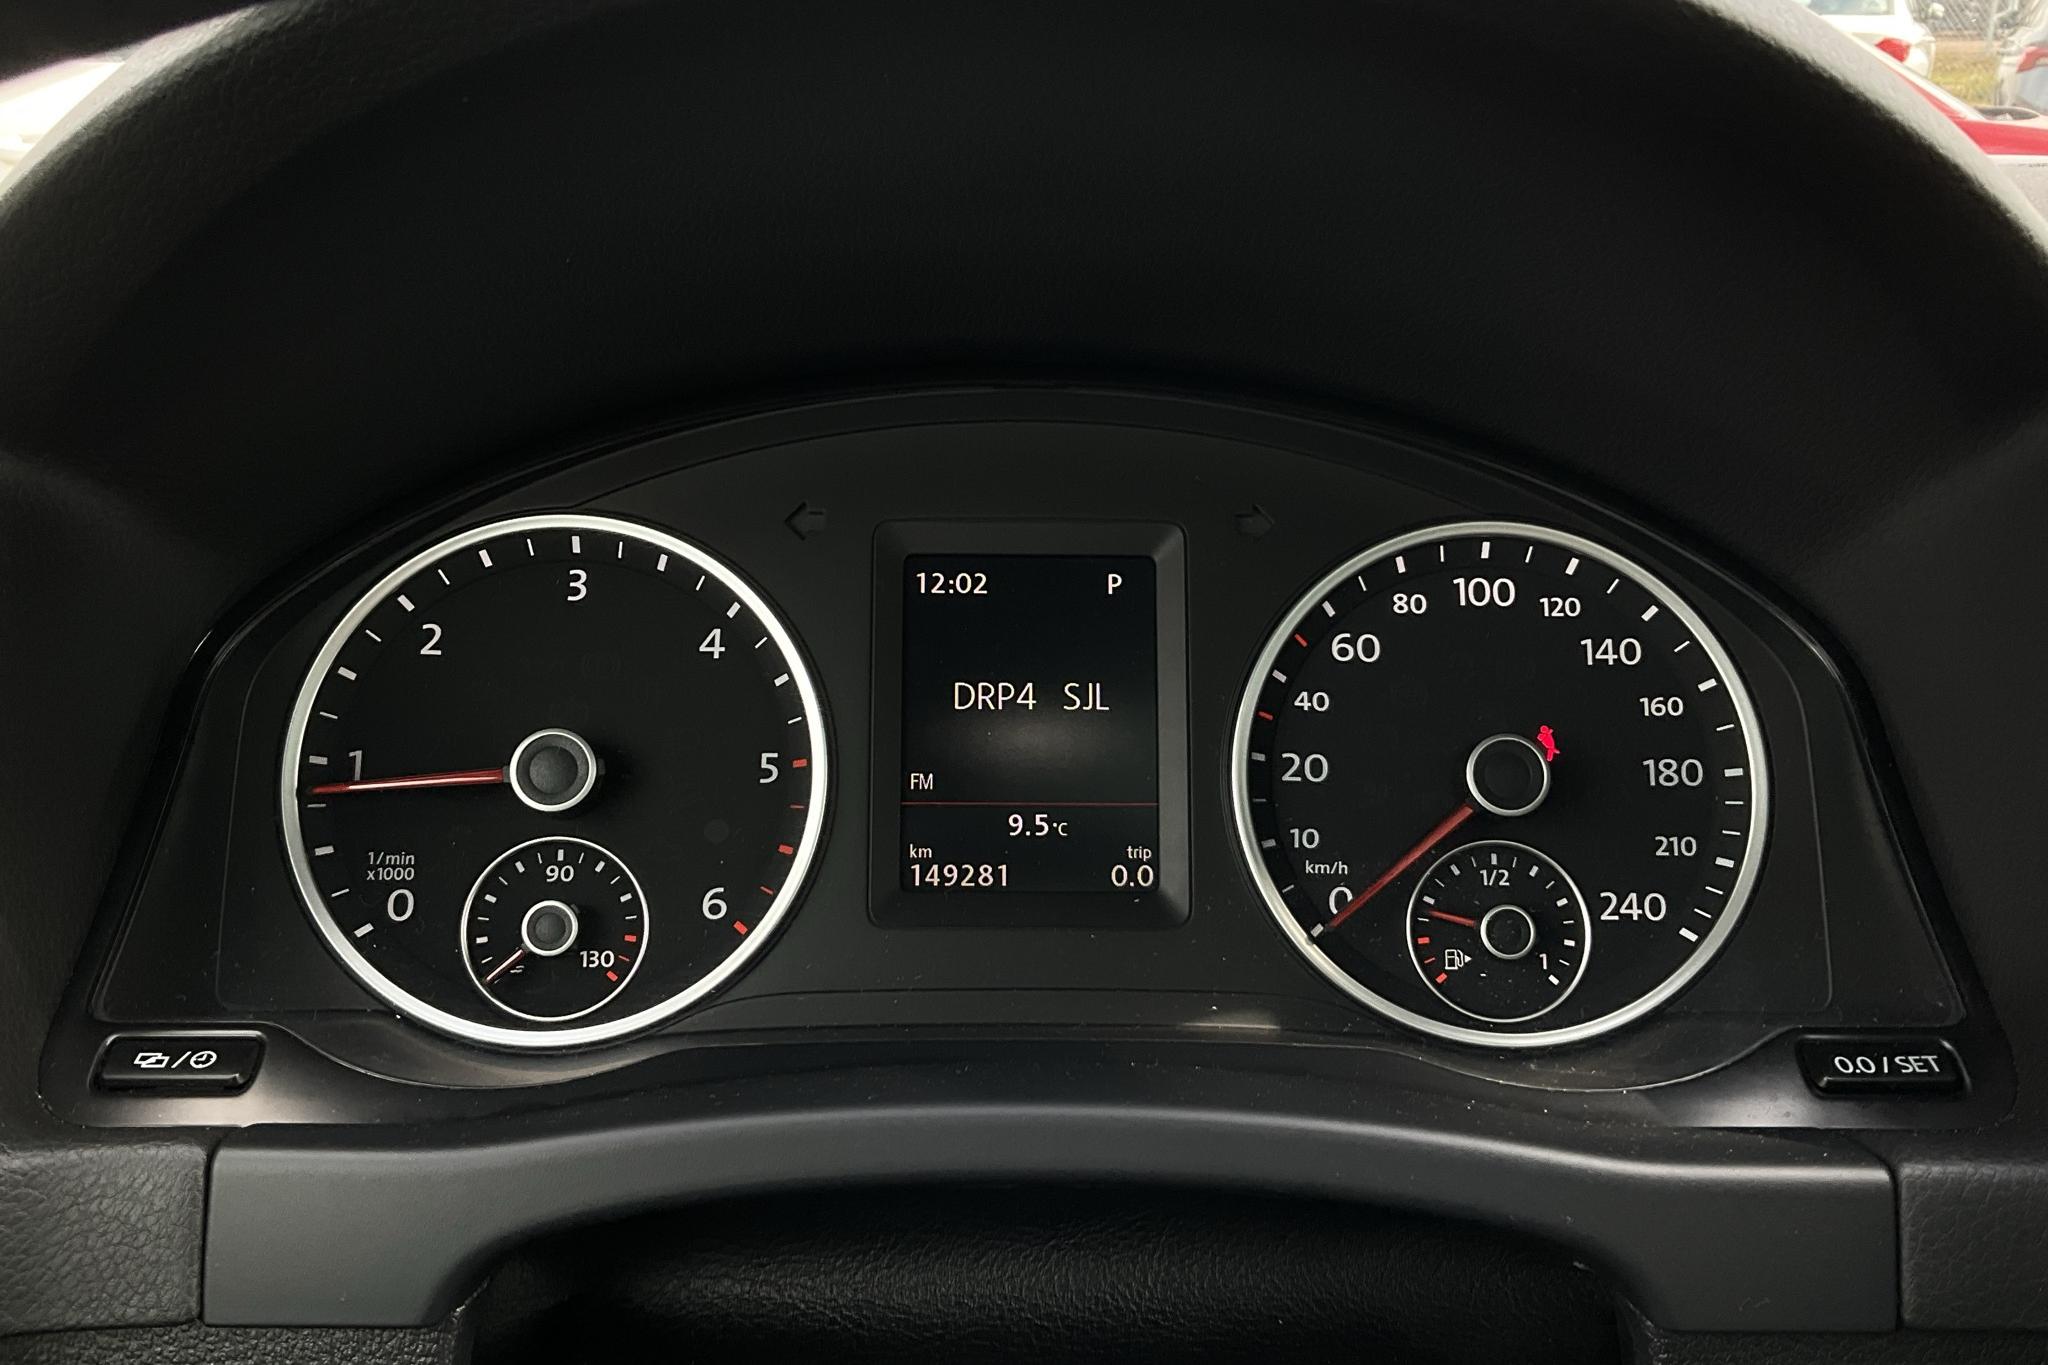 VW Tiguan 2.0 TDI 4MOTION BlueMotion Technology (184hk) - 149 290 km - Automatic - white - 2016